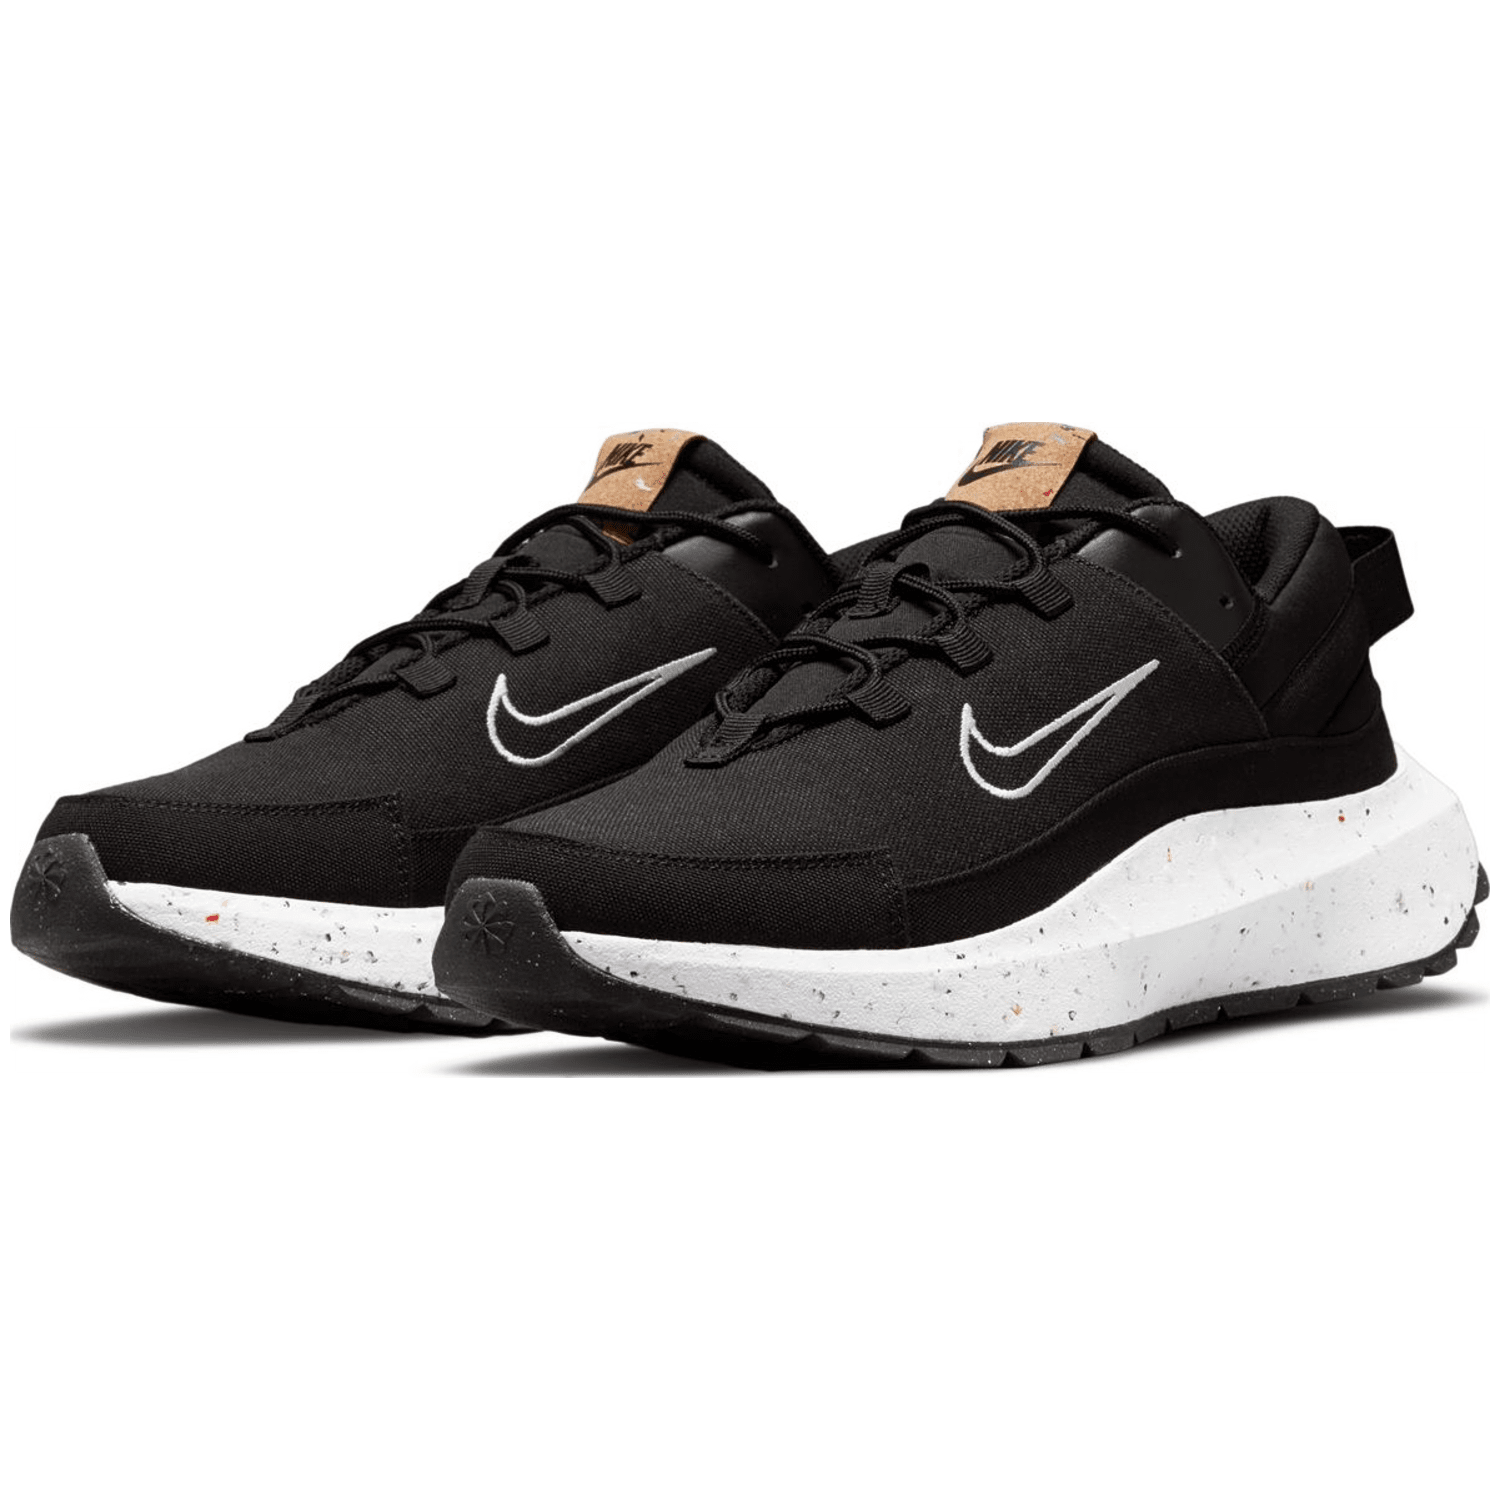 Nike Crater Remixa Herren Freizeit-Schuh